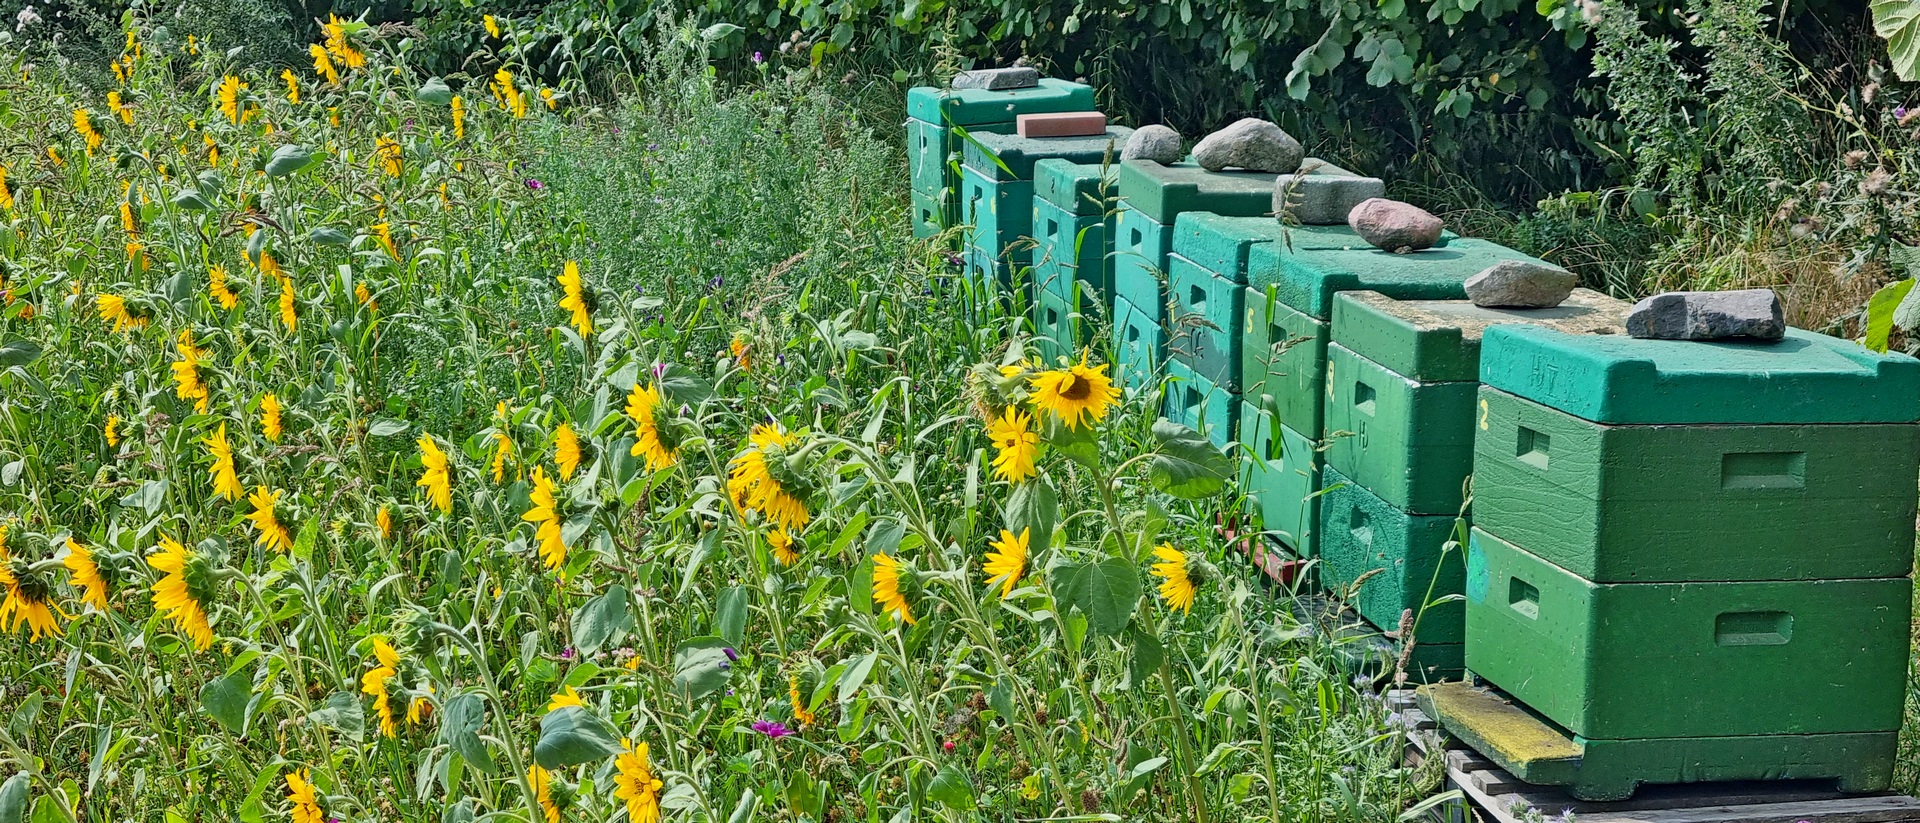 Bienenstöcke neben einem Sonnenblumenfeld